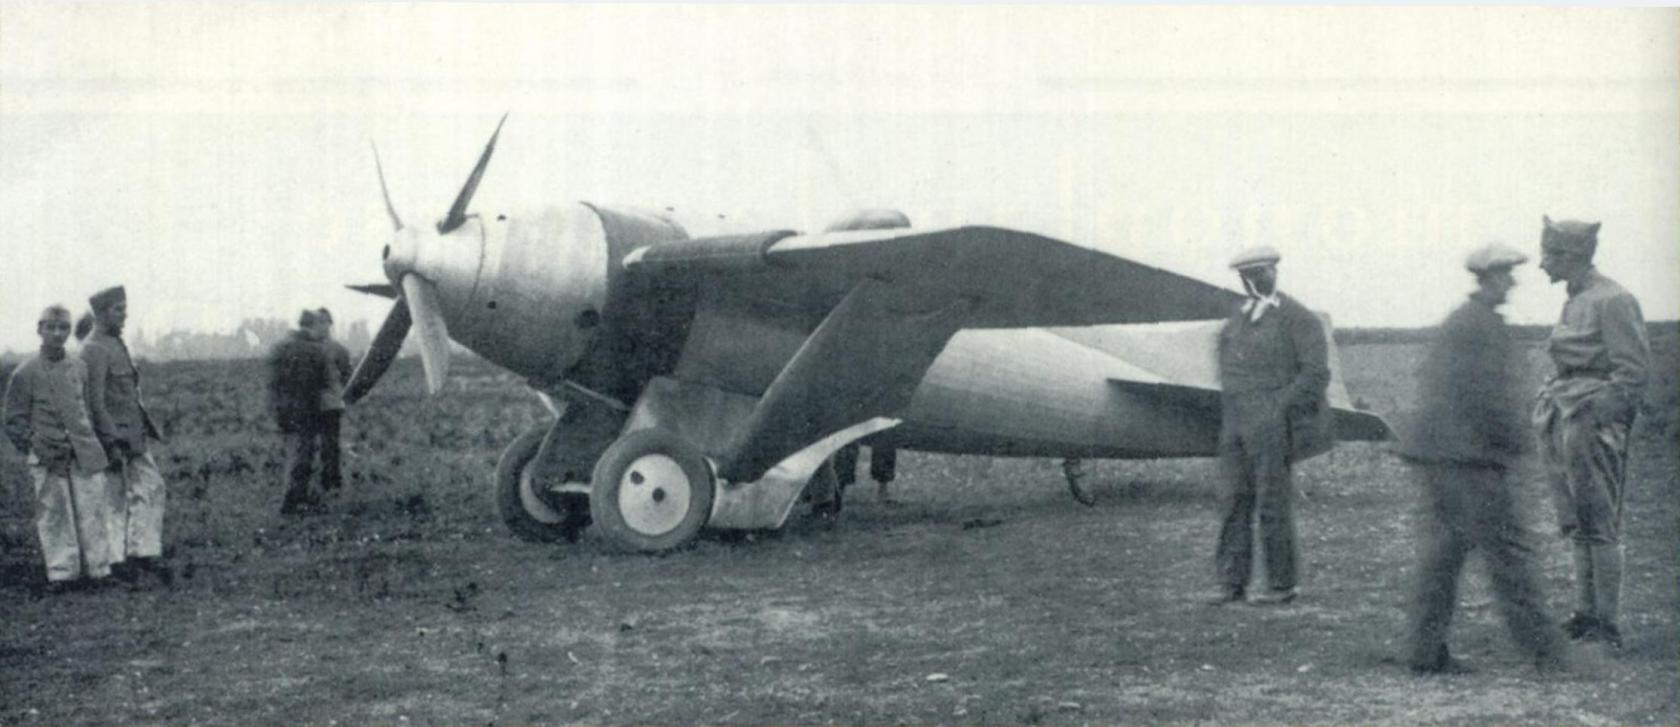 Гоночный самолет Salmson-Béchereau SB 3. Франция